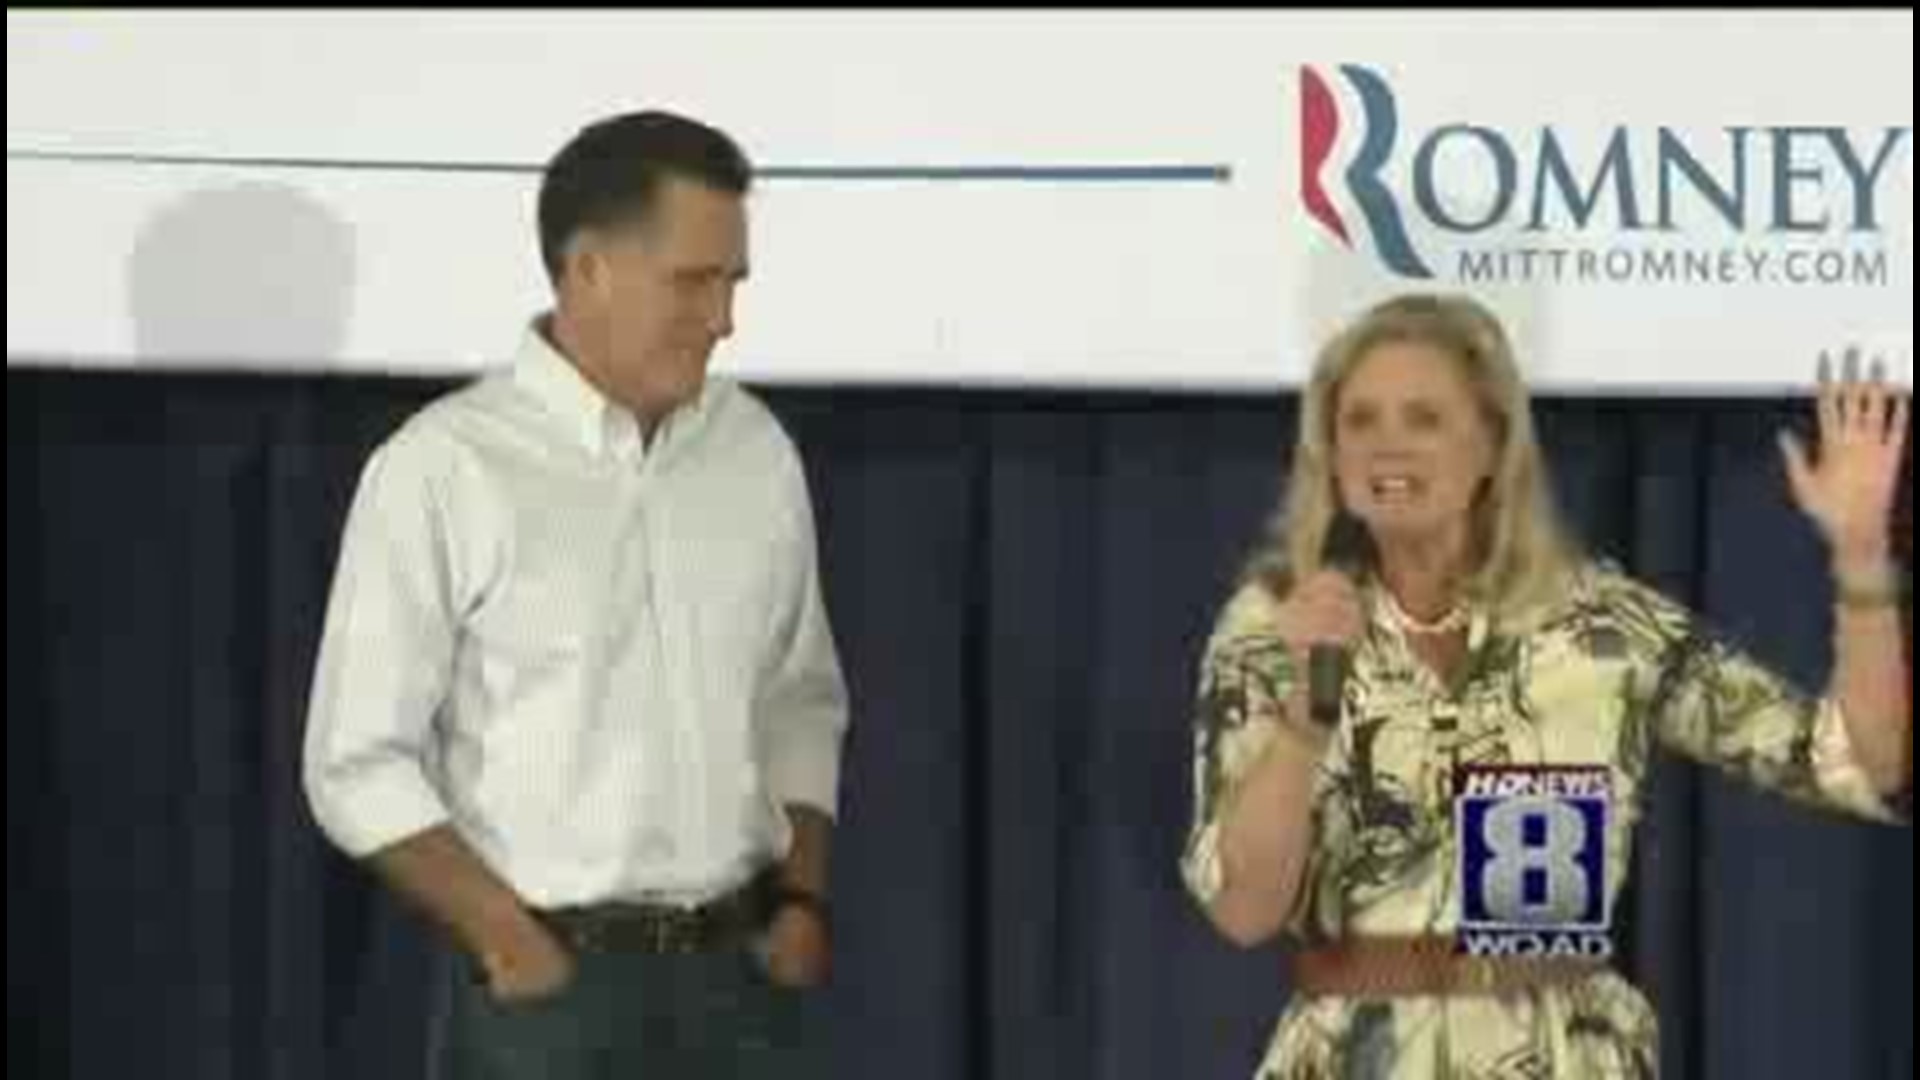 Romney in Moline.mp4